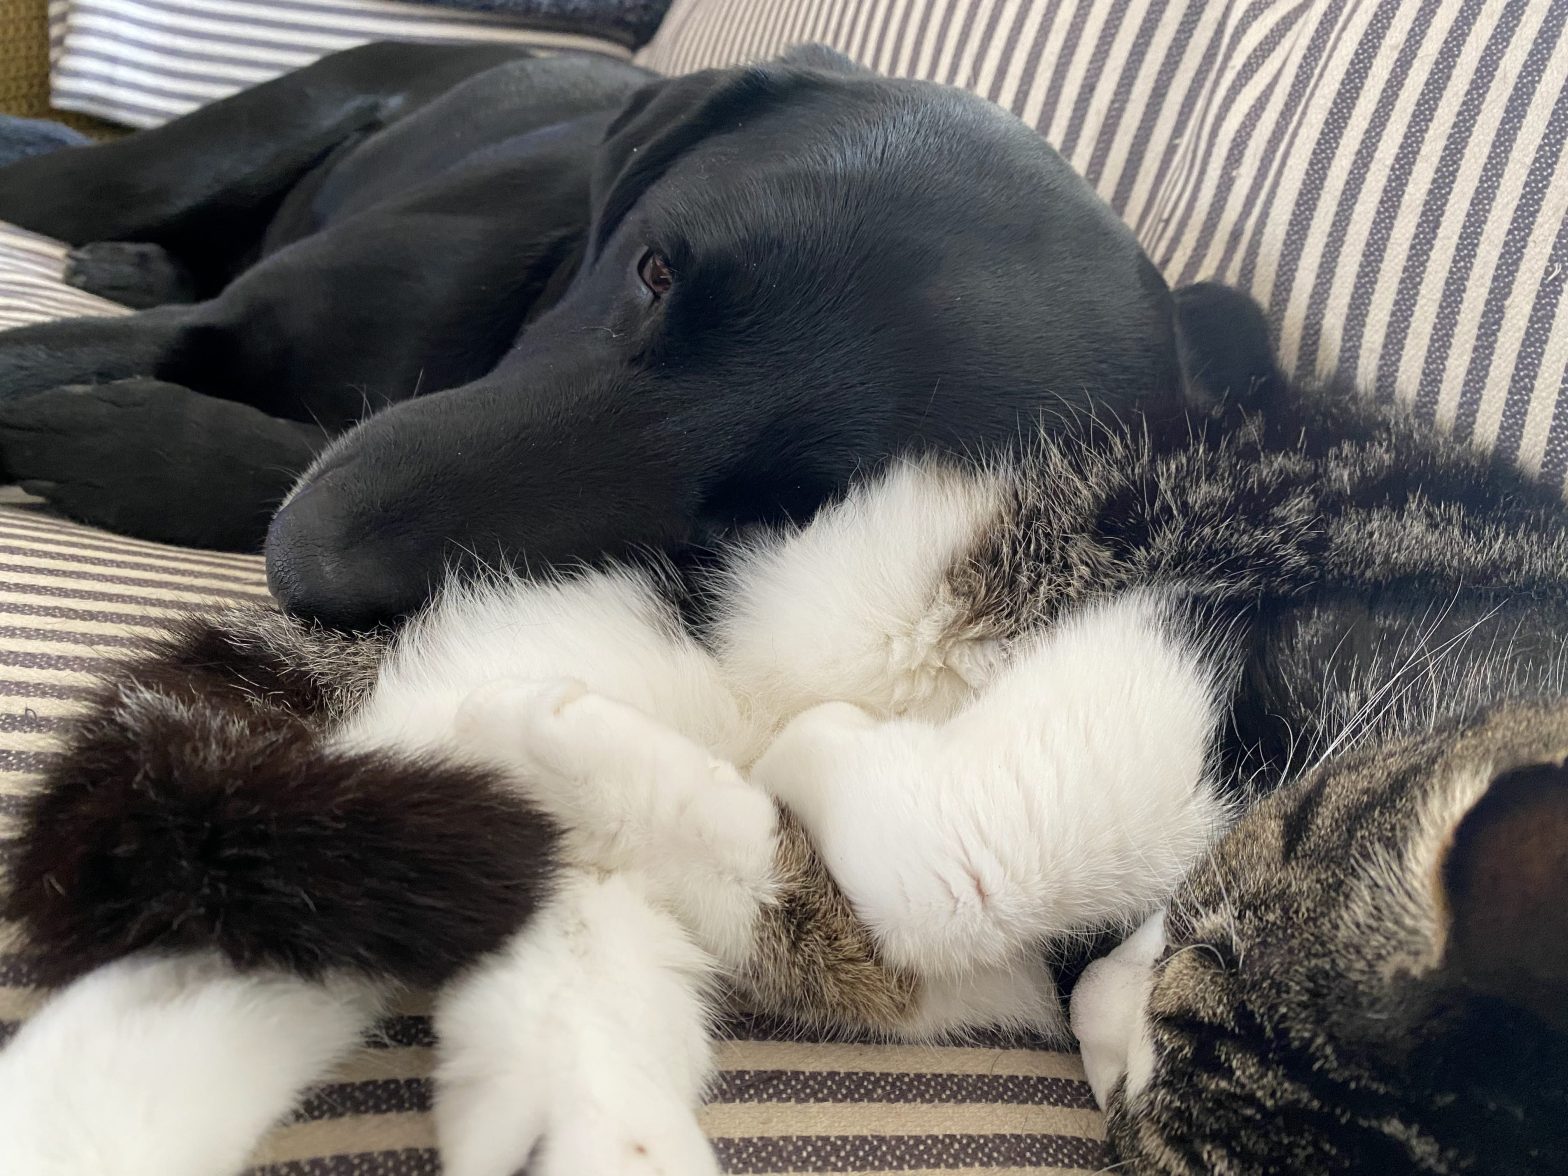 Black Labrador dog using the cat as a pillow.